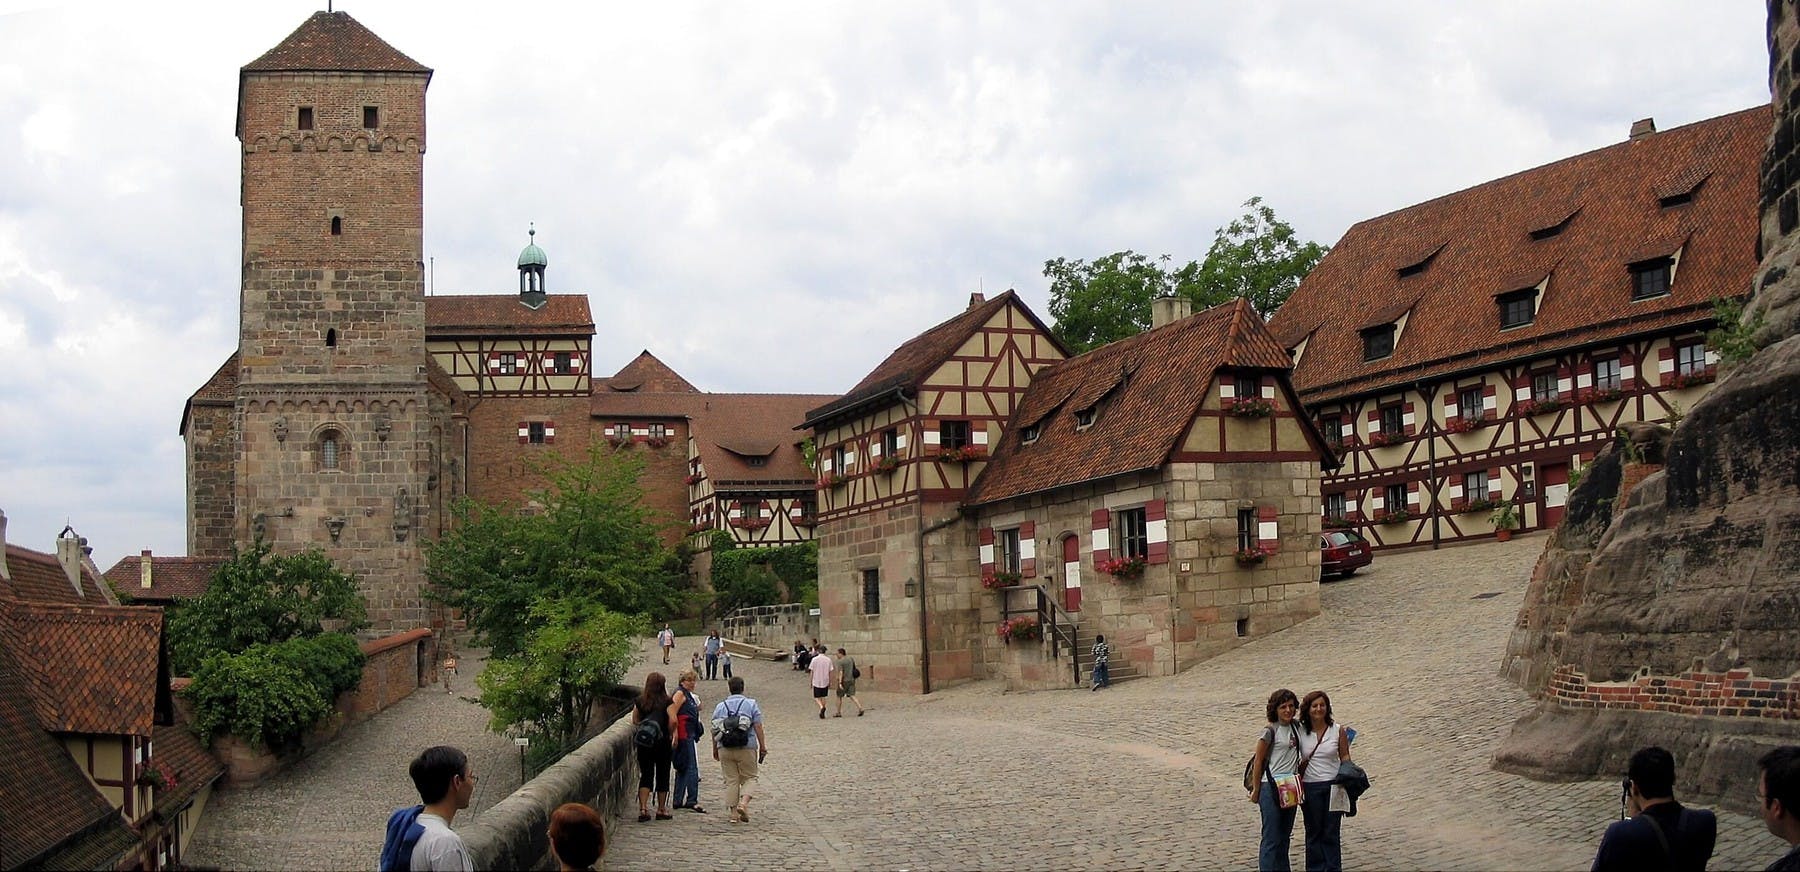 Sehenswürdigkeiten in Nürnberg: Die Nürnberger Burg